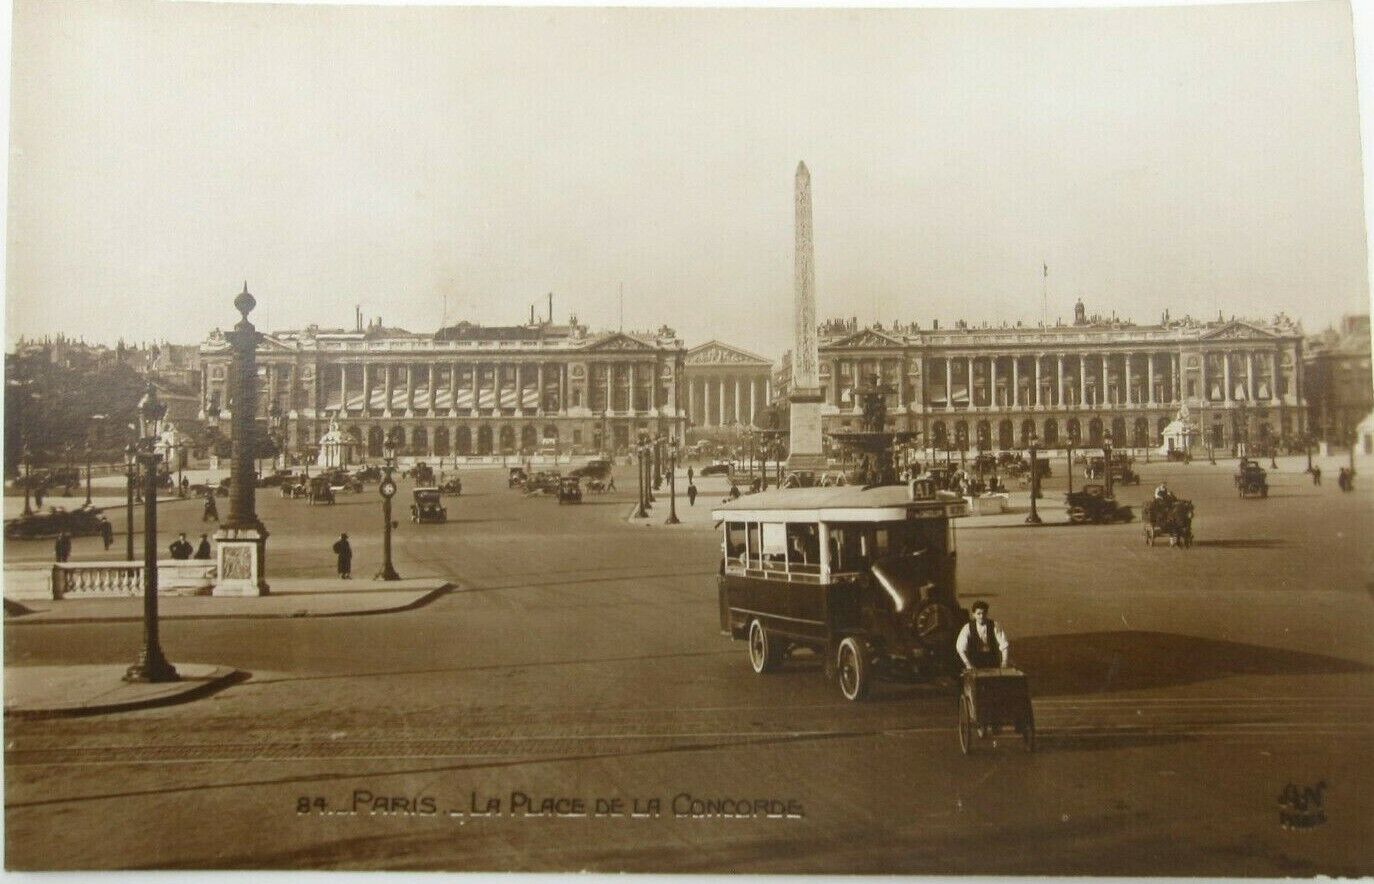 RPCC Vintage Paris France De La Concorde Street View Postcard (A70)